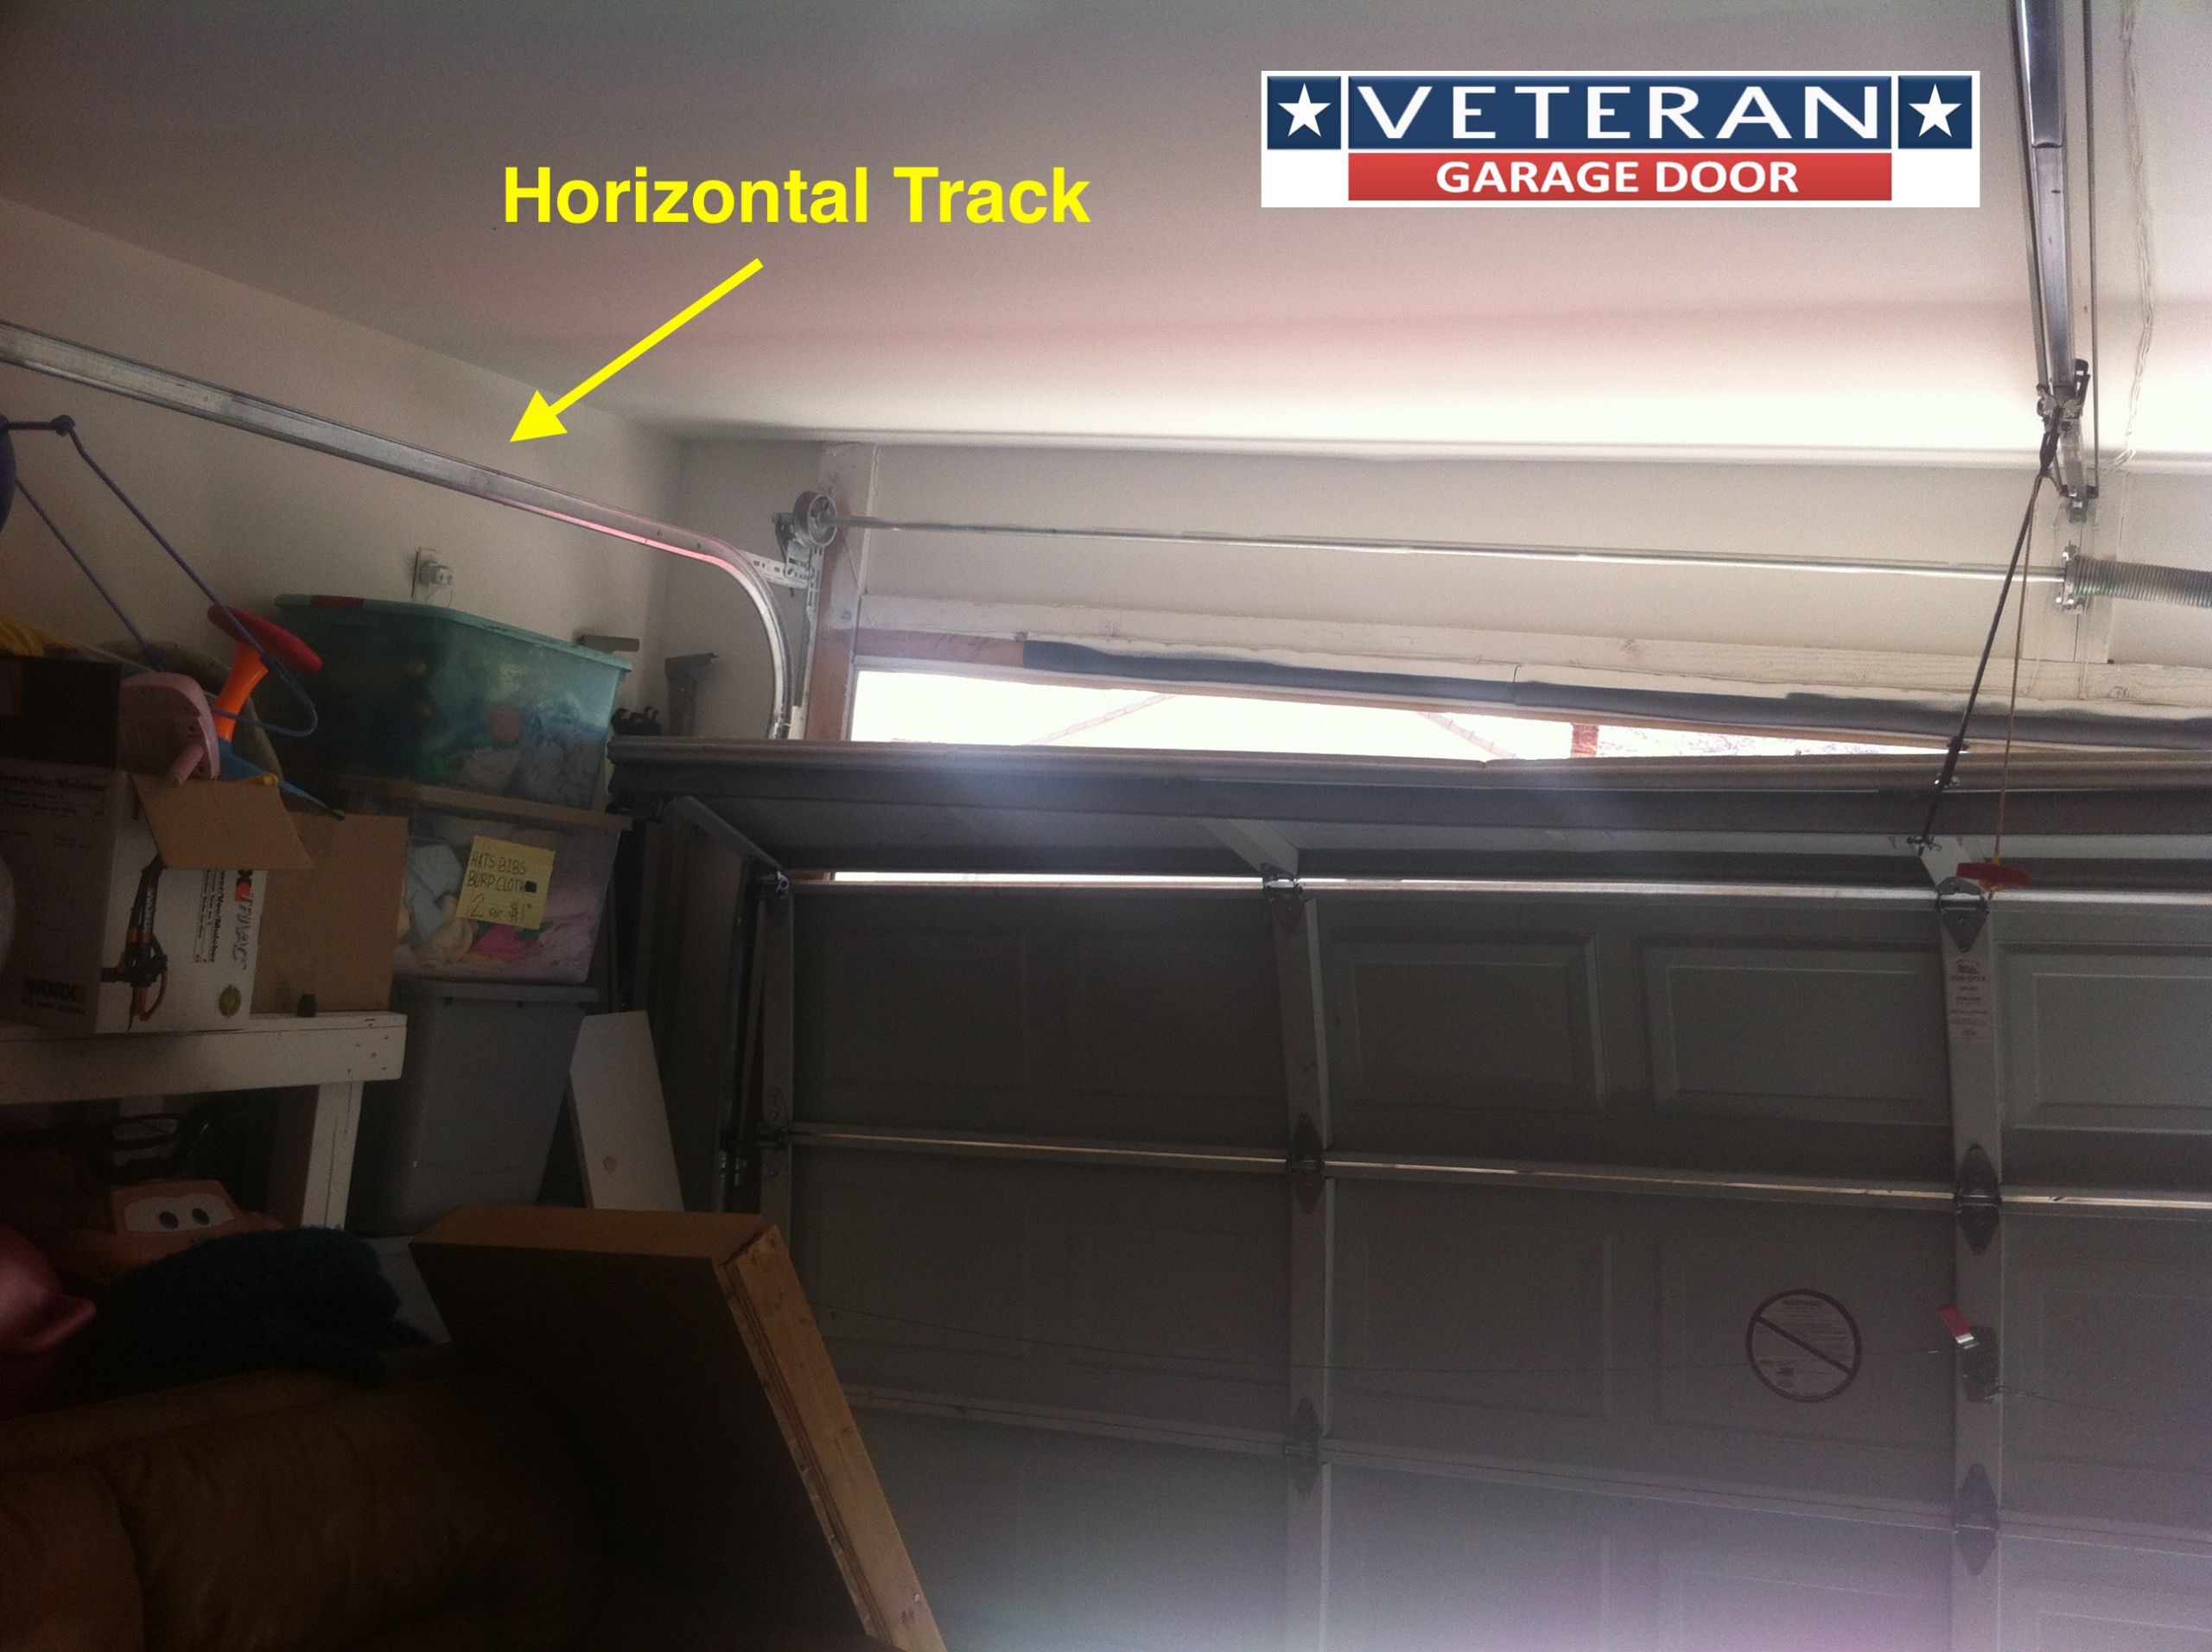 Garage Door Horizontal Track
 